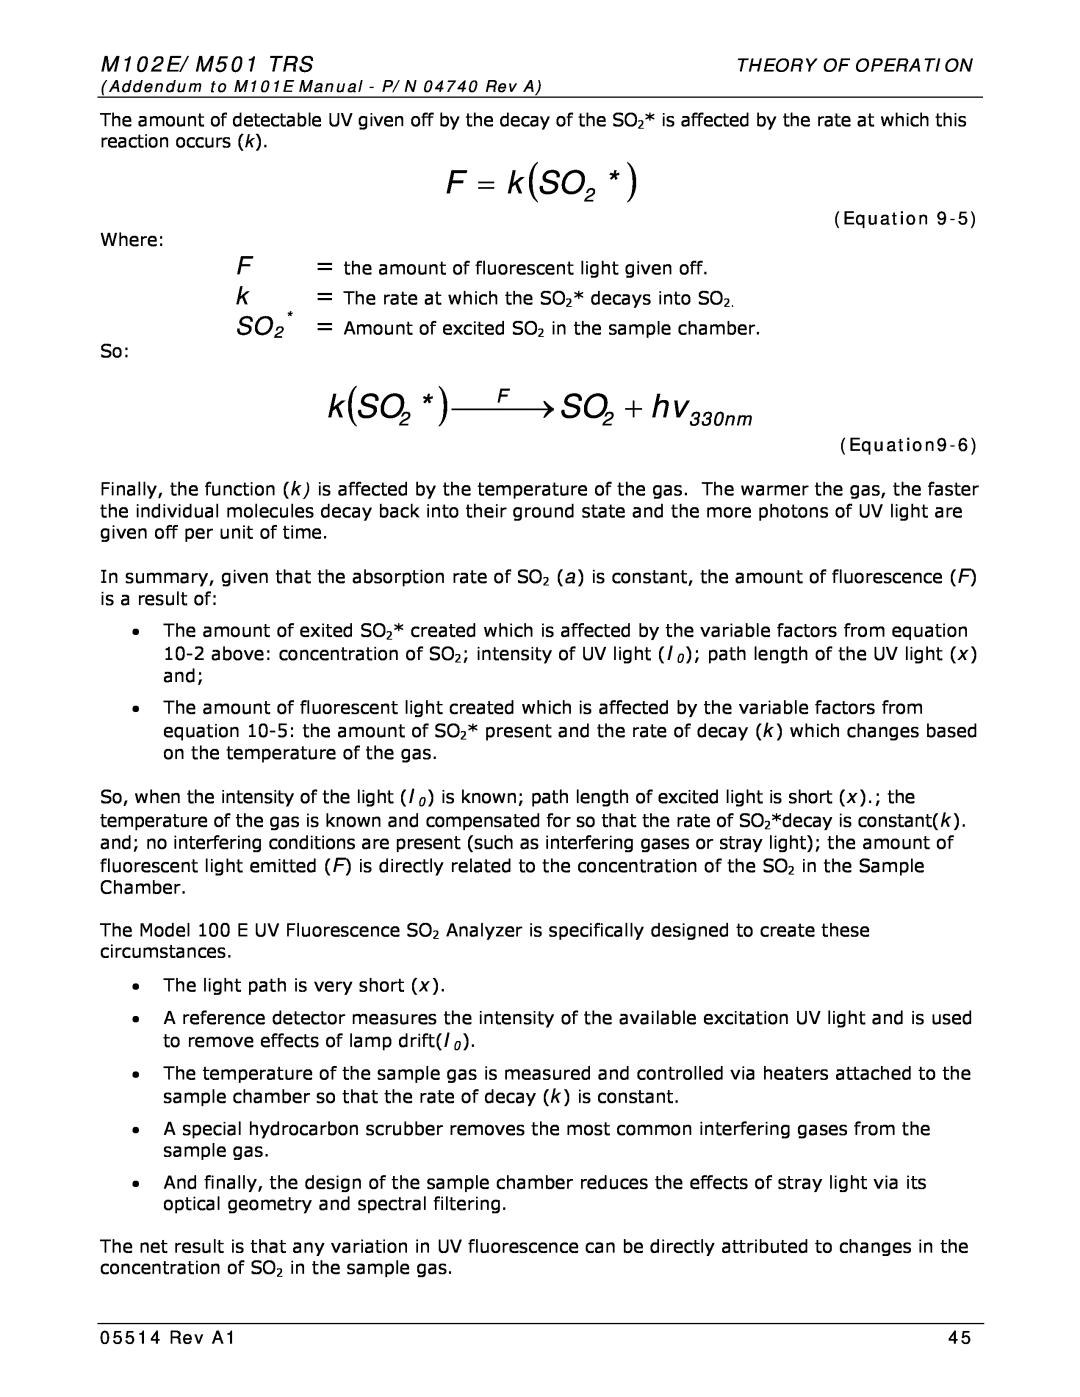 Teledyne manual F = kSO2, M102E/M501 TRS, kSO2 * ⎯⎯F⎯→ SO2 + hv330nm, Theory Of Operation, Equation9-6, Rev A1 